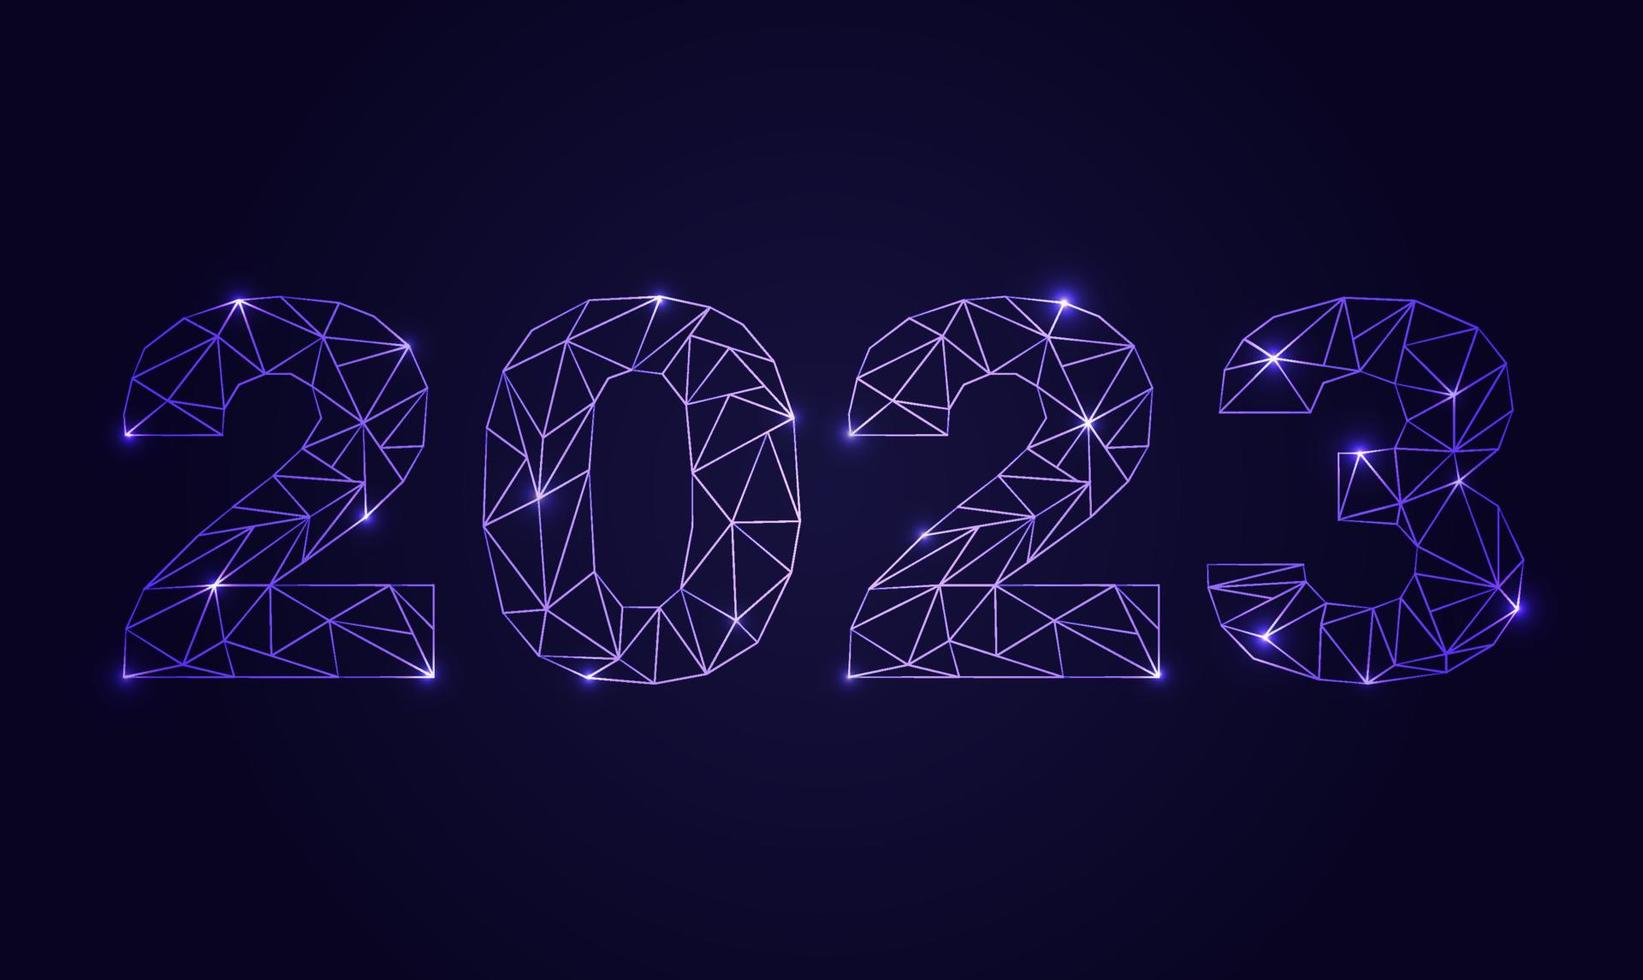 cartão de feliz ano novo 2023 com números de luz futuristas brancos e azuis. cartão, cartaz, cartão postal. vetor